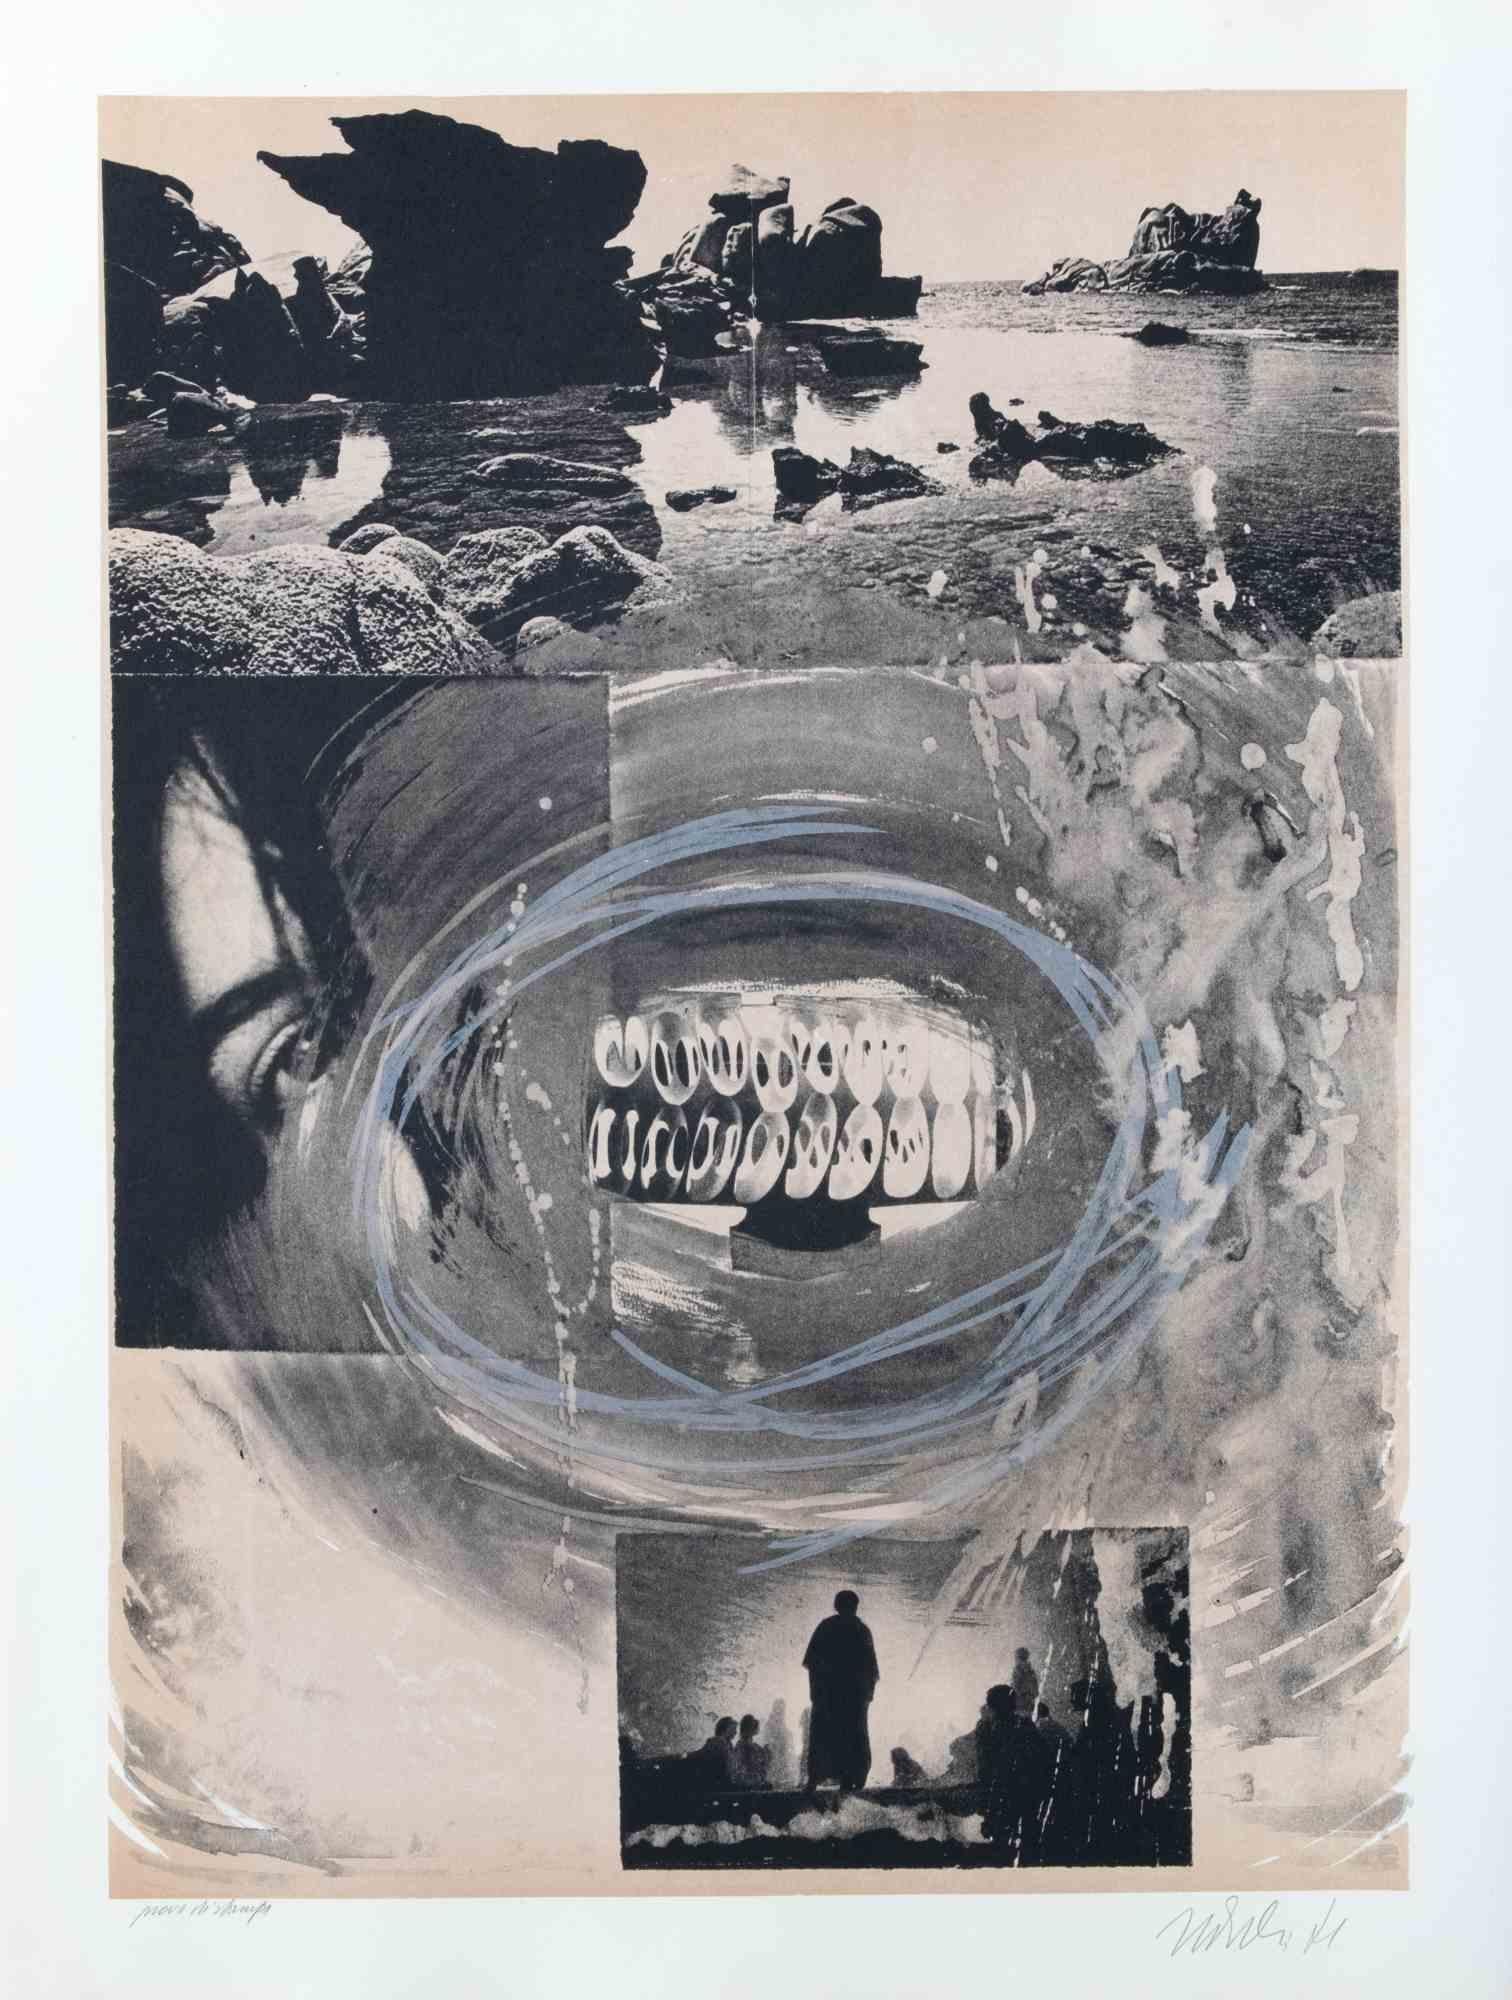 La Bouche du temps est une œuvre d'art contemporain réalisée par Nani Tedeschi en 1971.

Lithographie en noir et blanc.

Signé à la main et daté dans la marge inférieure.

Épreuve d'artiste